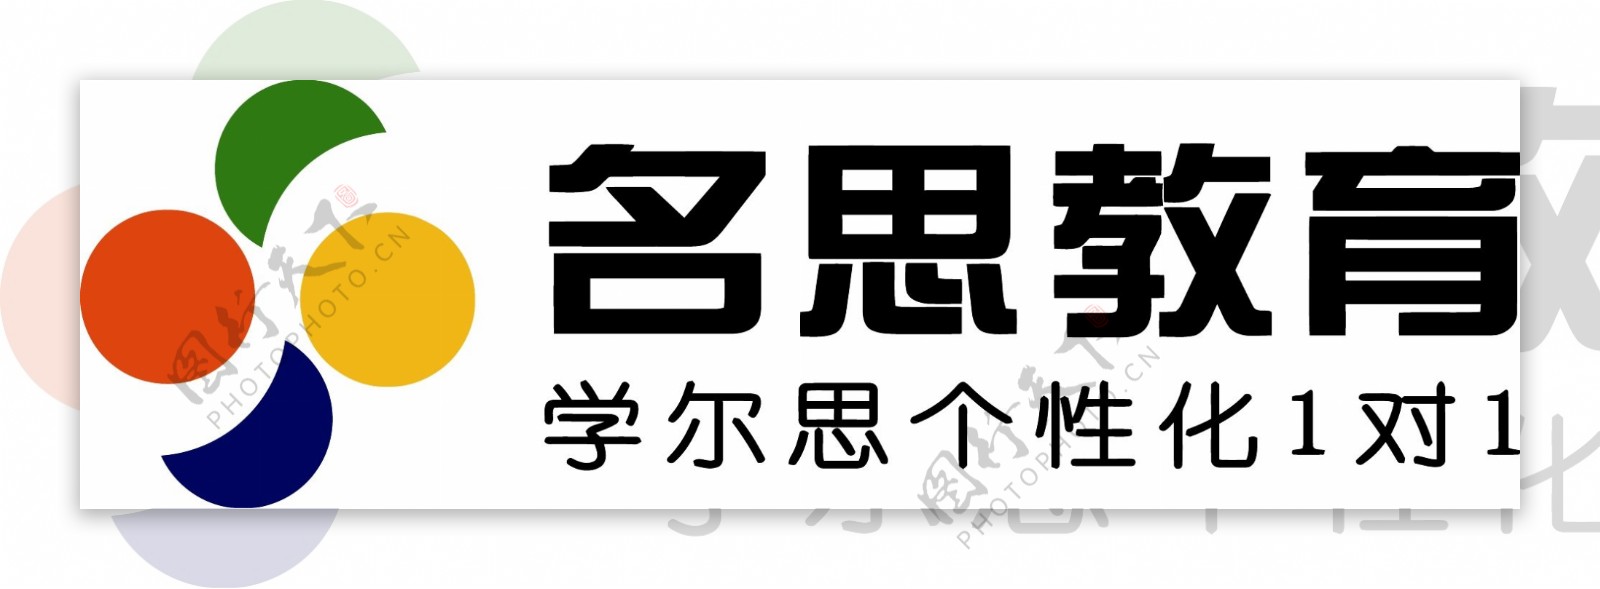 名思教育logo